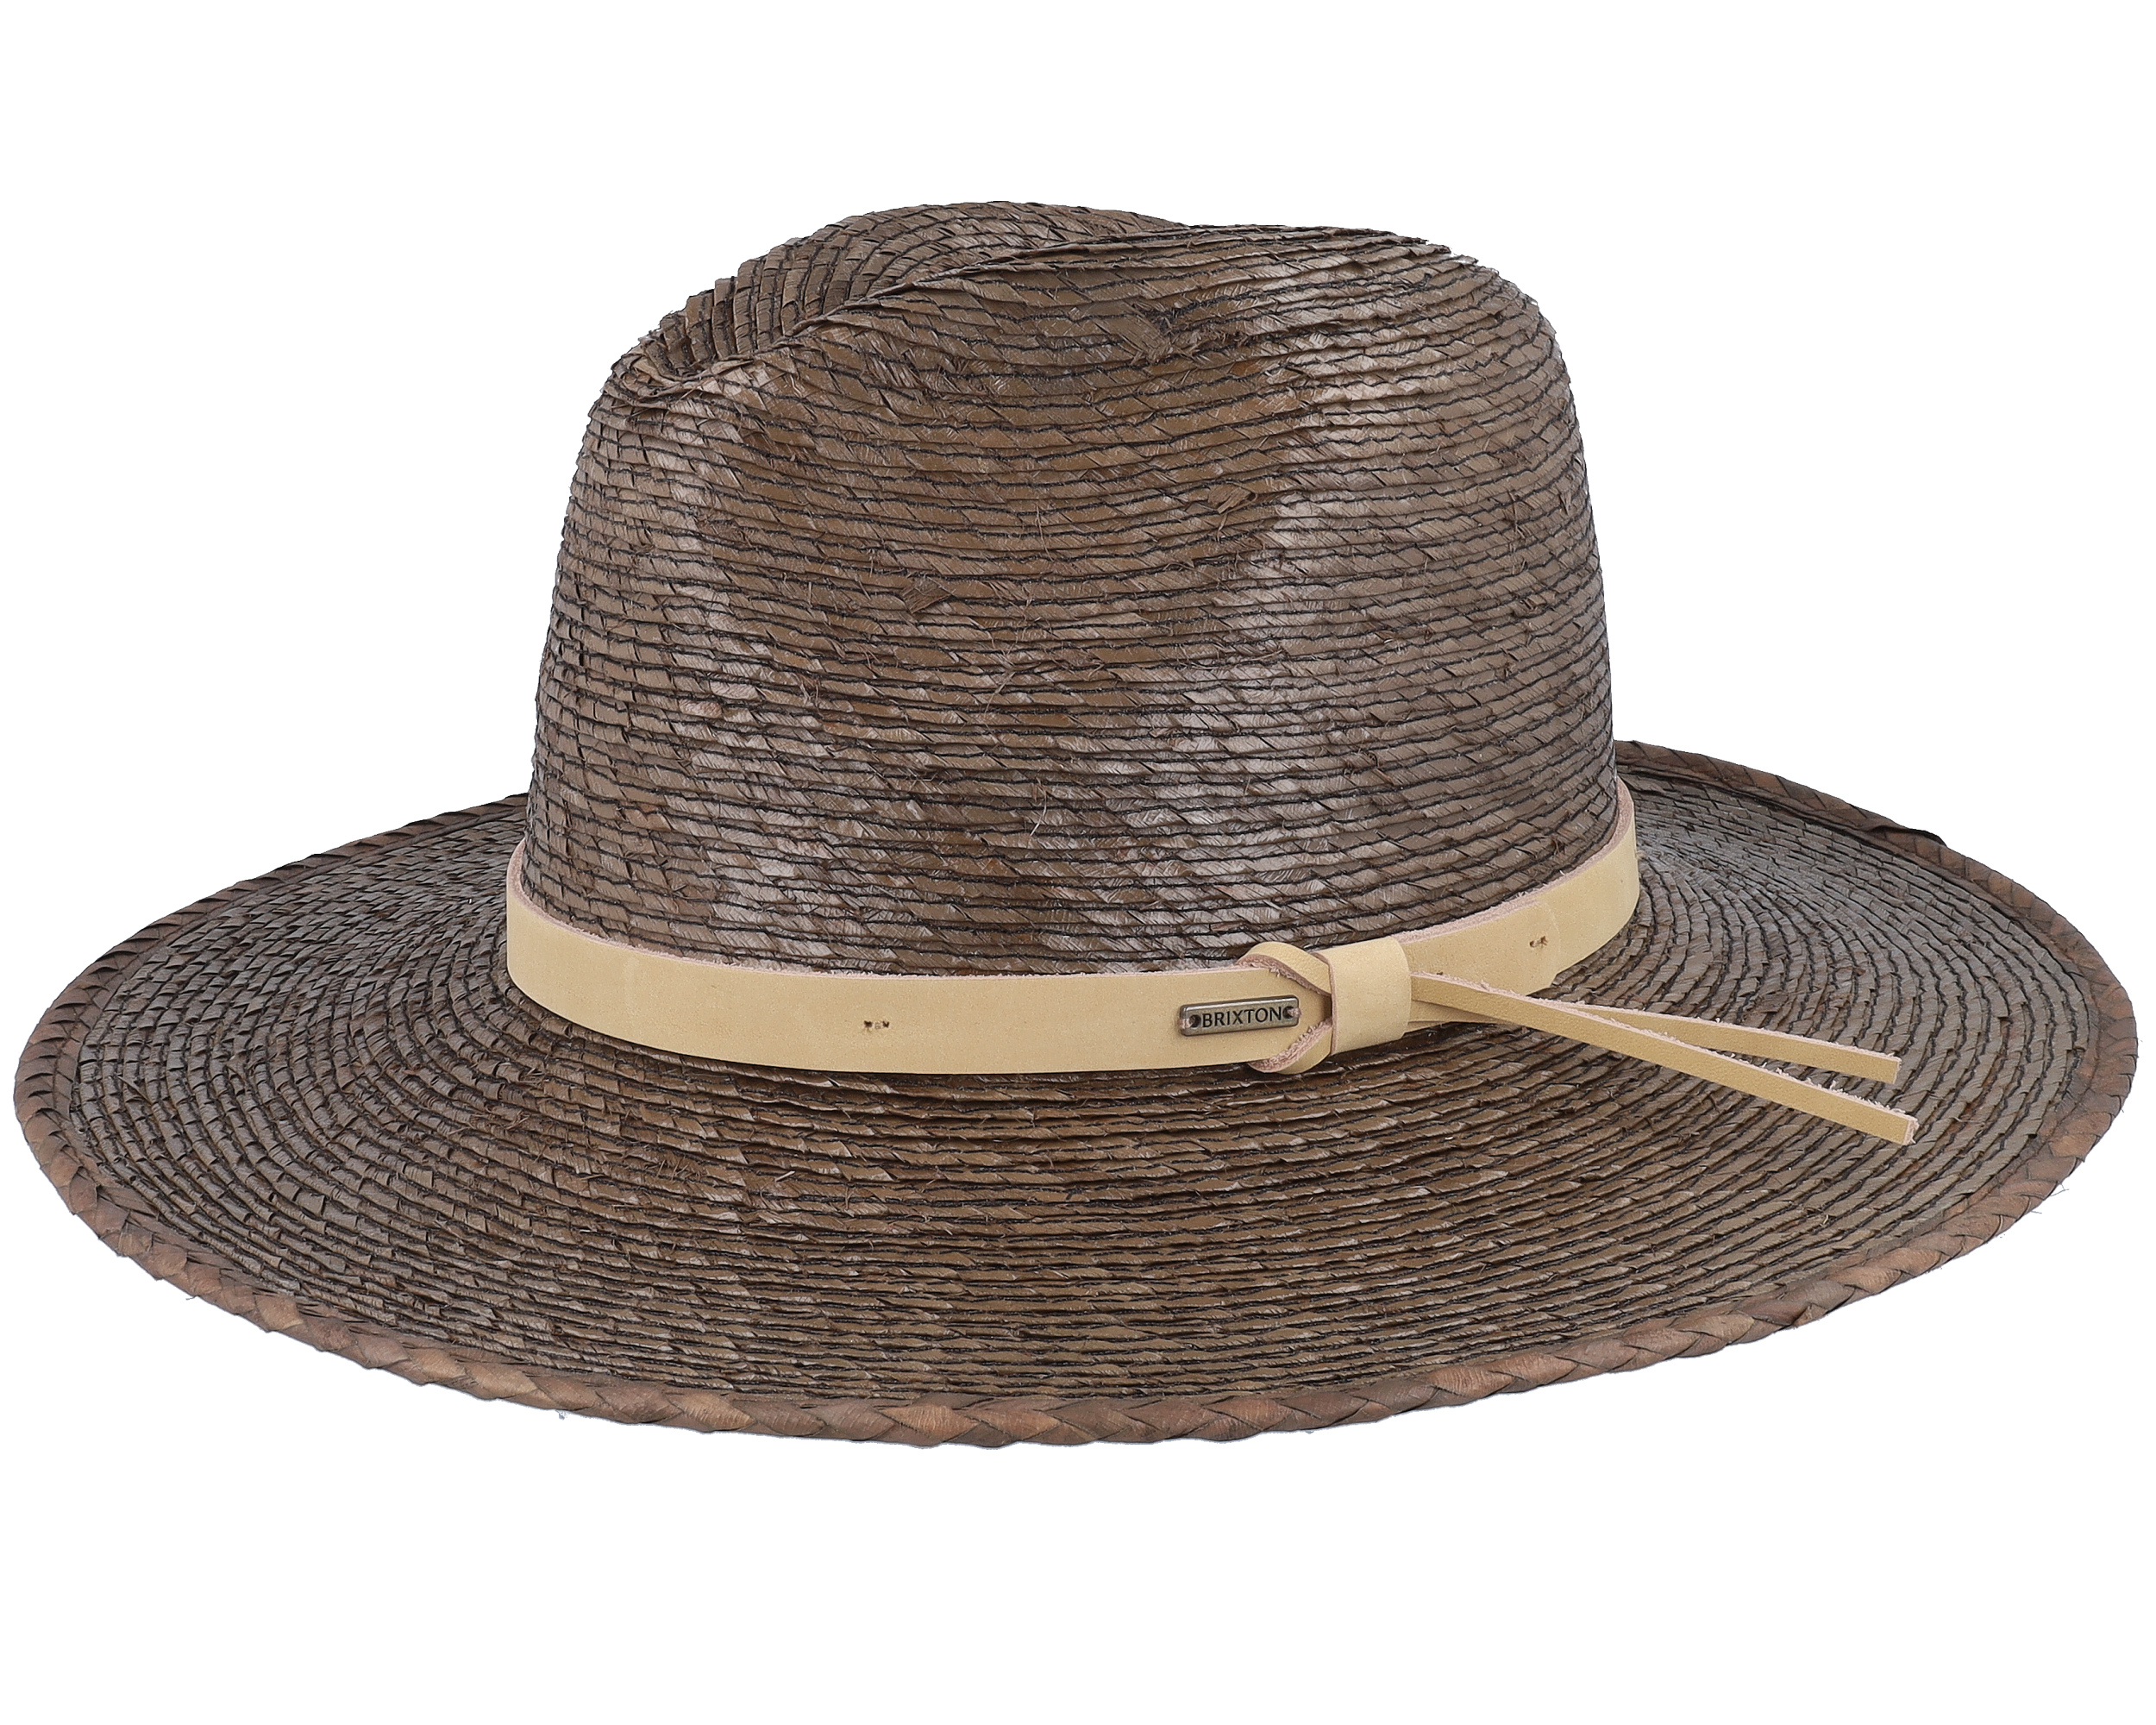 Brixton Field Proper Straw Hat Dark Earth/Natural, L